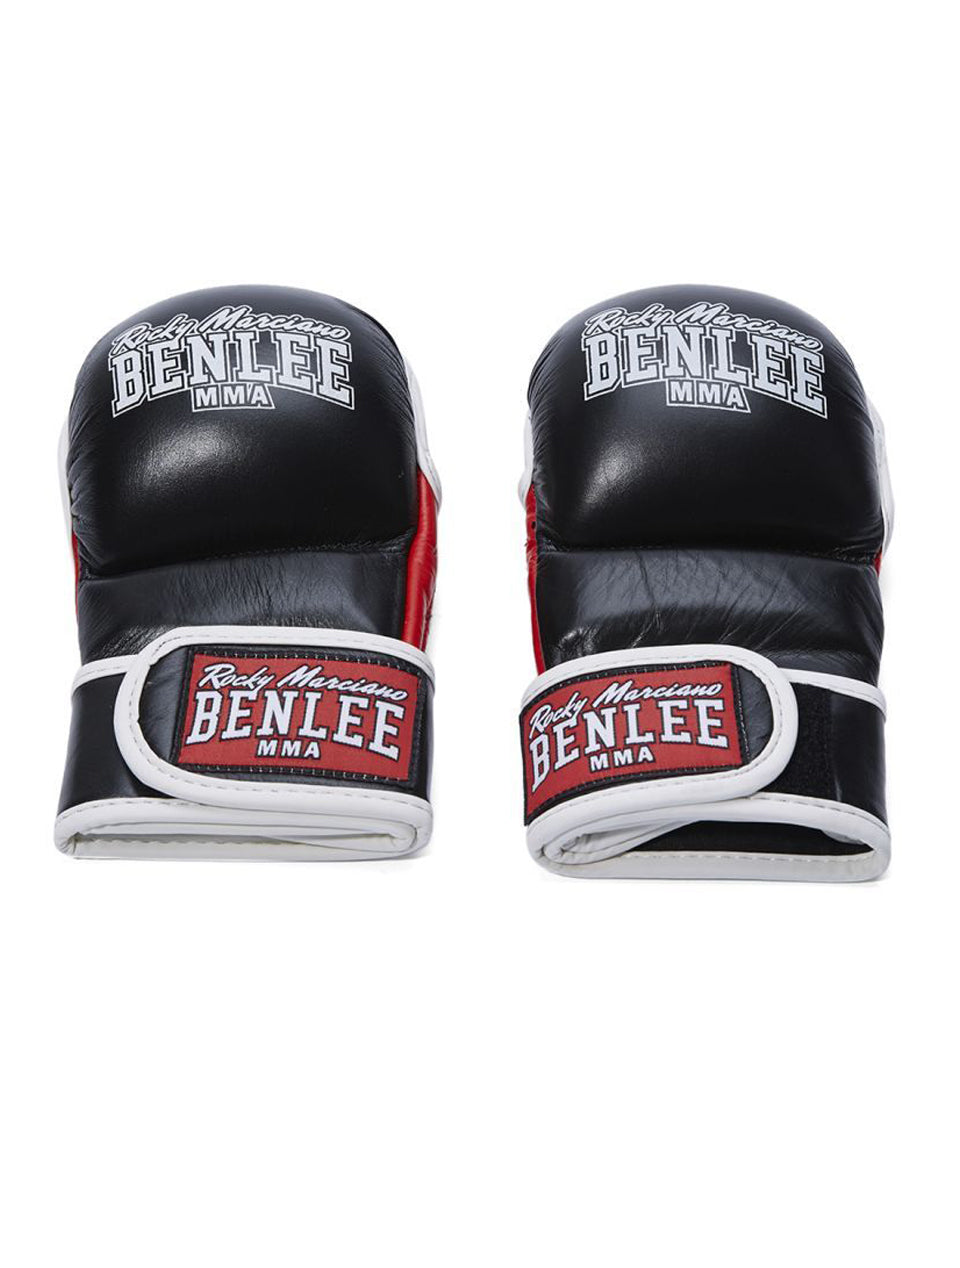 Benlee Leather MMA Sparring Gloves Striker - S/M